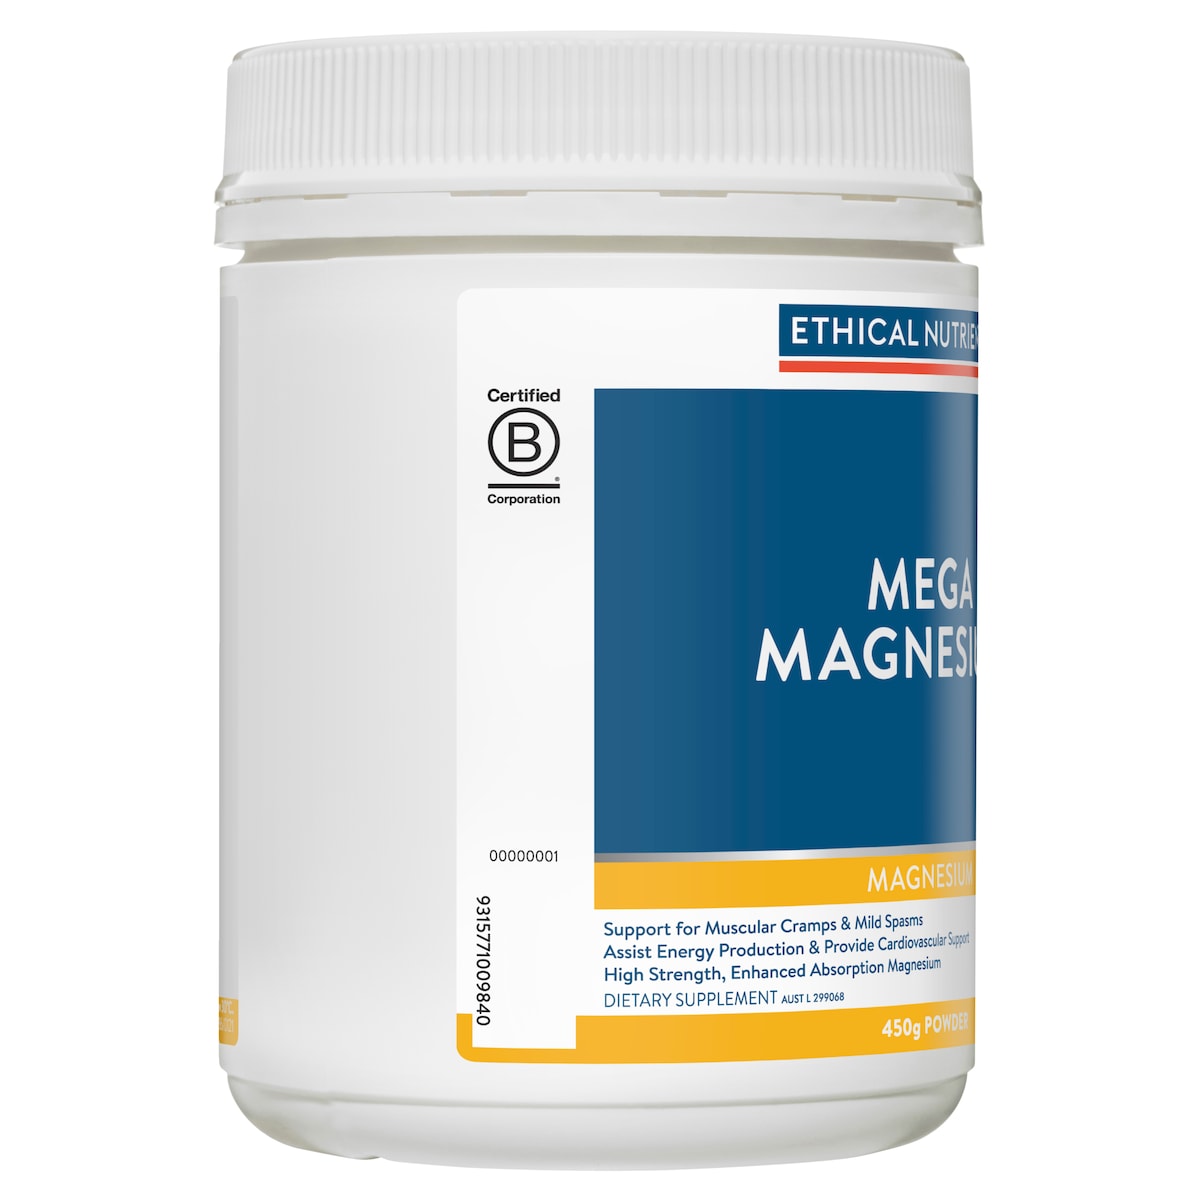 Ethical Nutrients Mega Magnesium Citrus 450G Powder